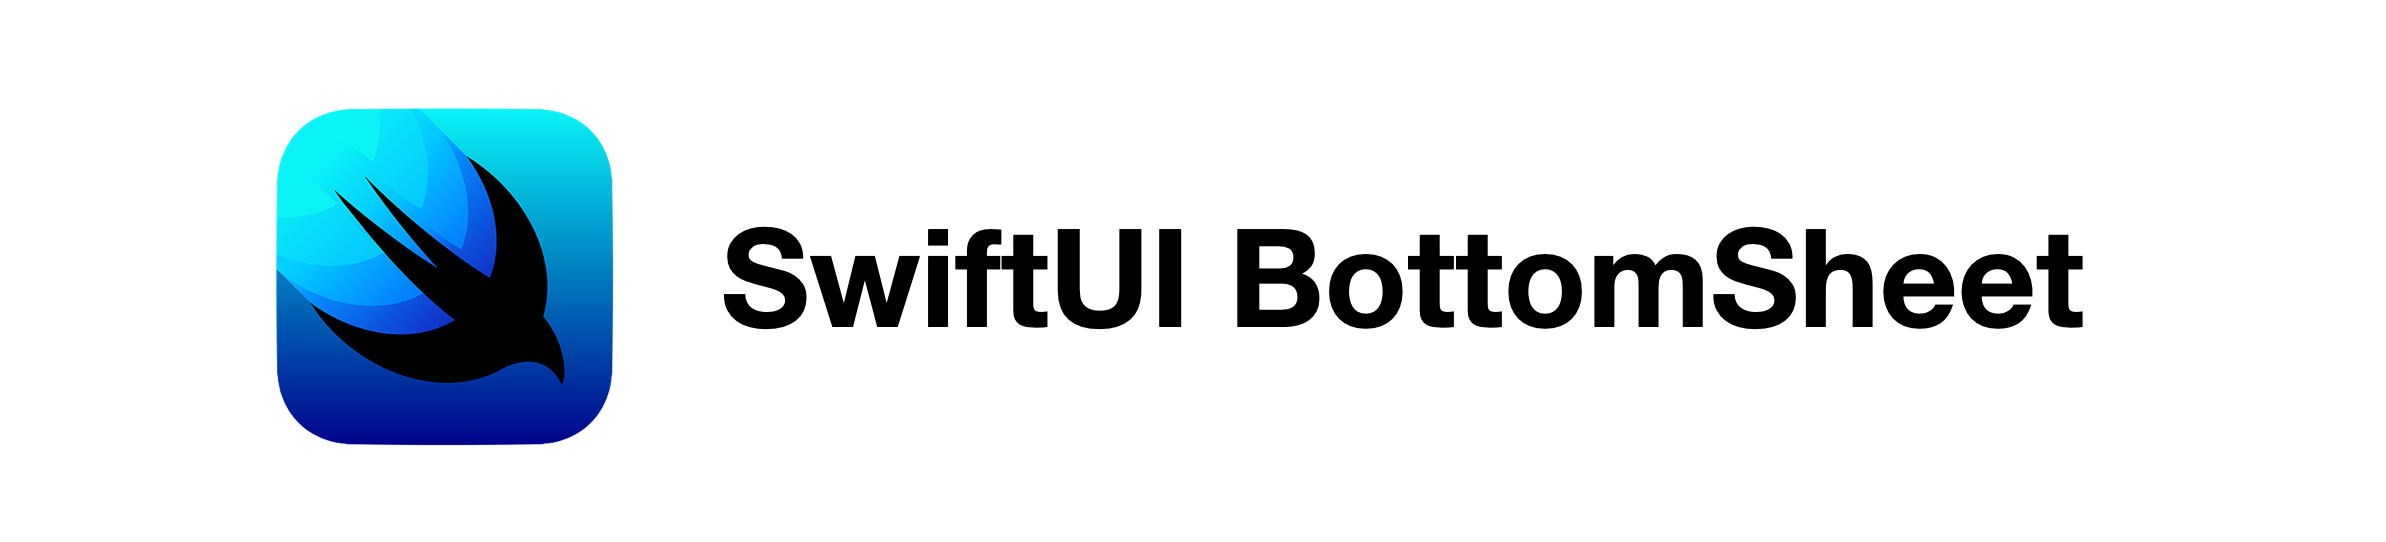 SwiftUI BottomSheet